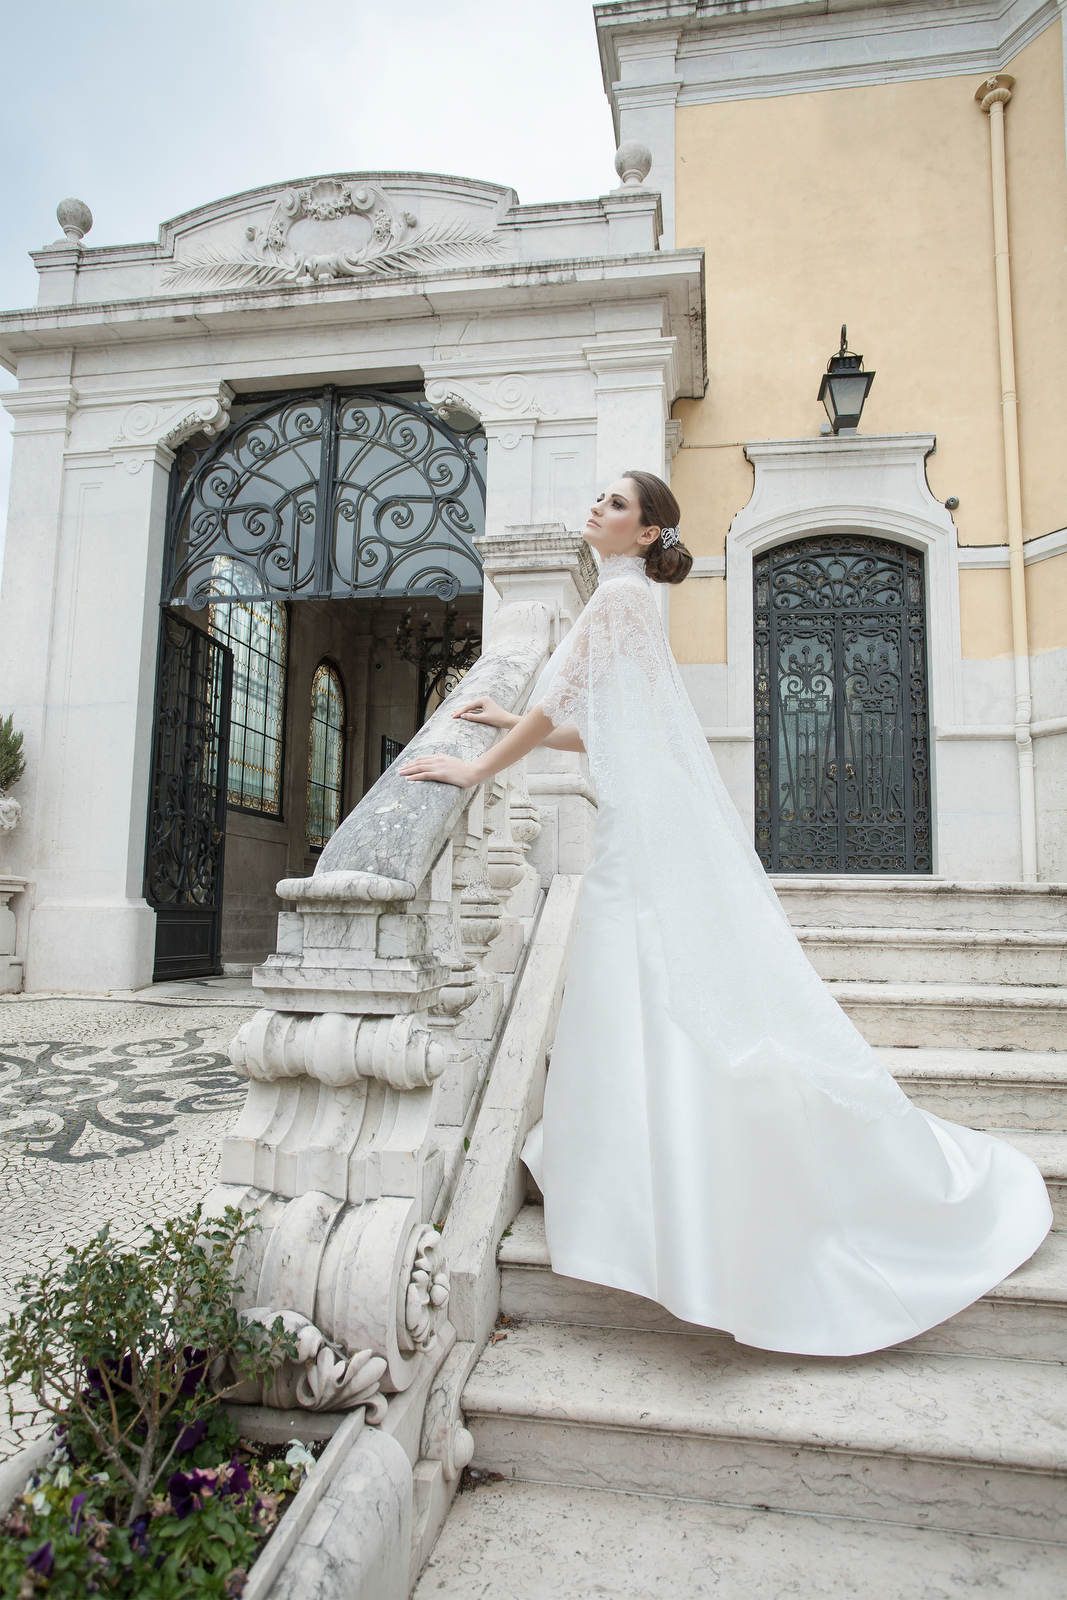 brides fashion editorial Brides Editorial CARLOS RODRIGUES Carlos rdorigues Photographer